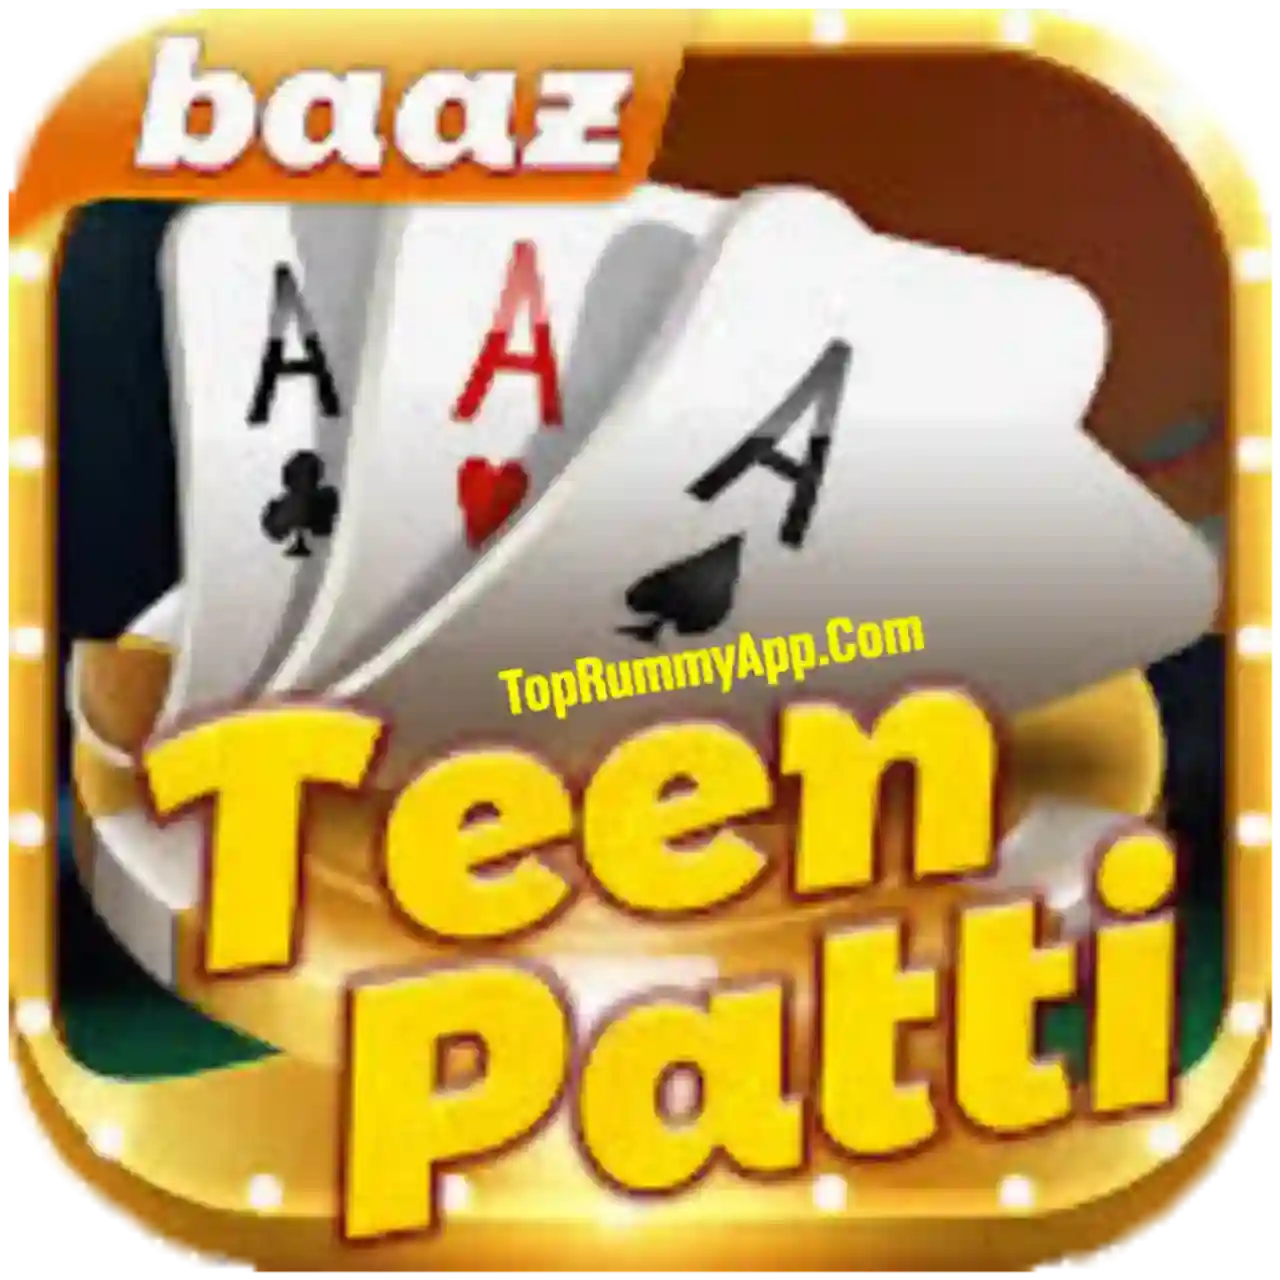 Teen Patti Baaz App Download All Teen Patti App List ₹41 Bonus